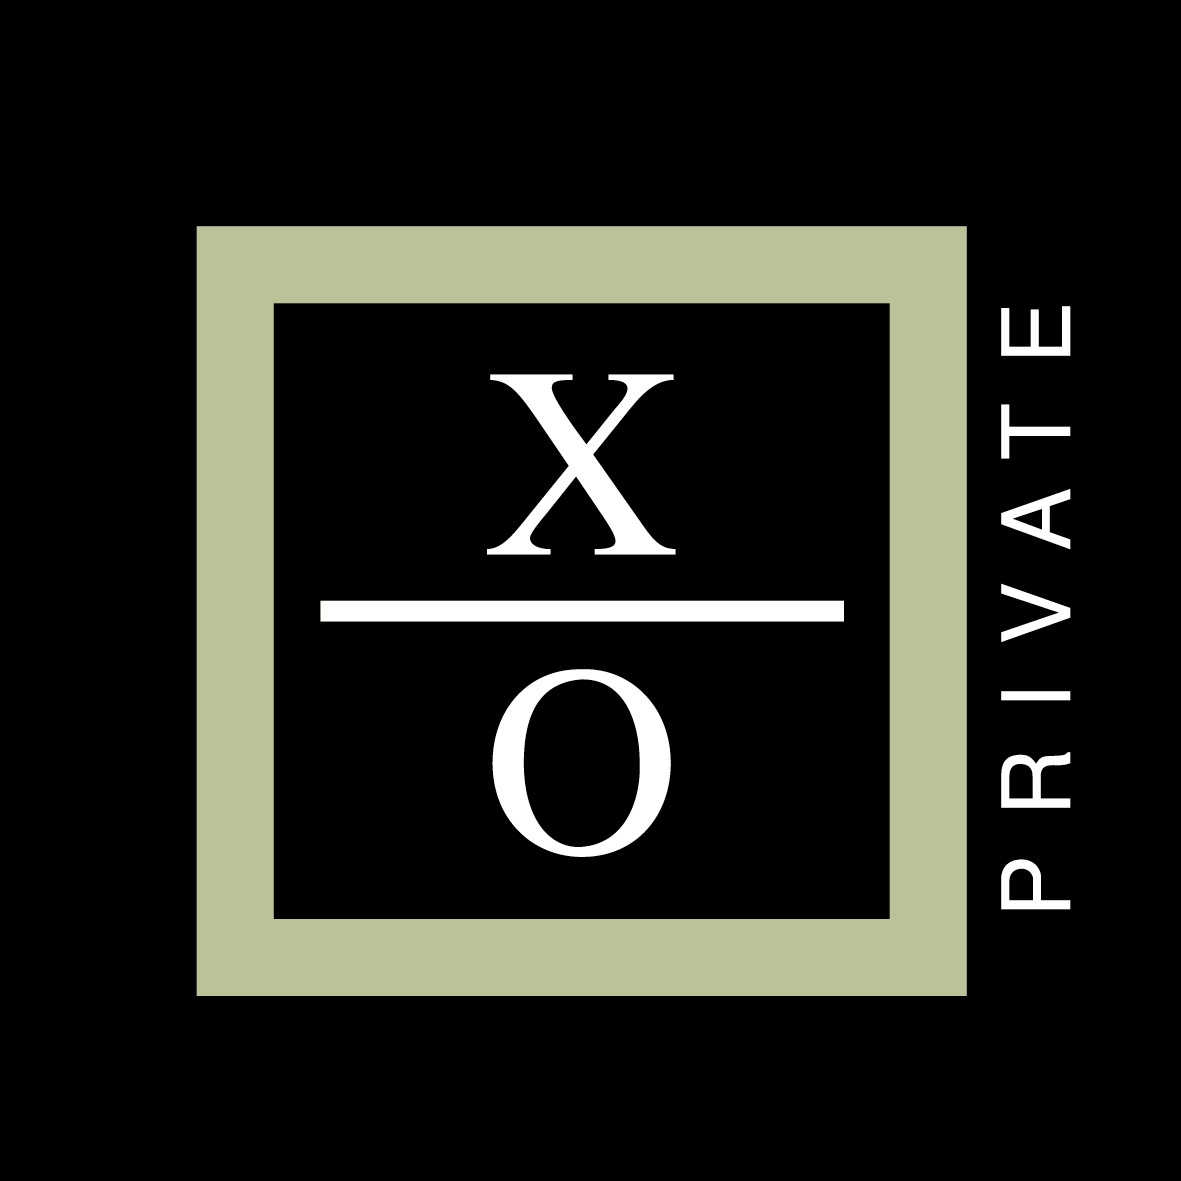 XO Private